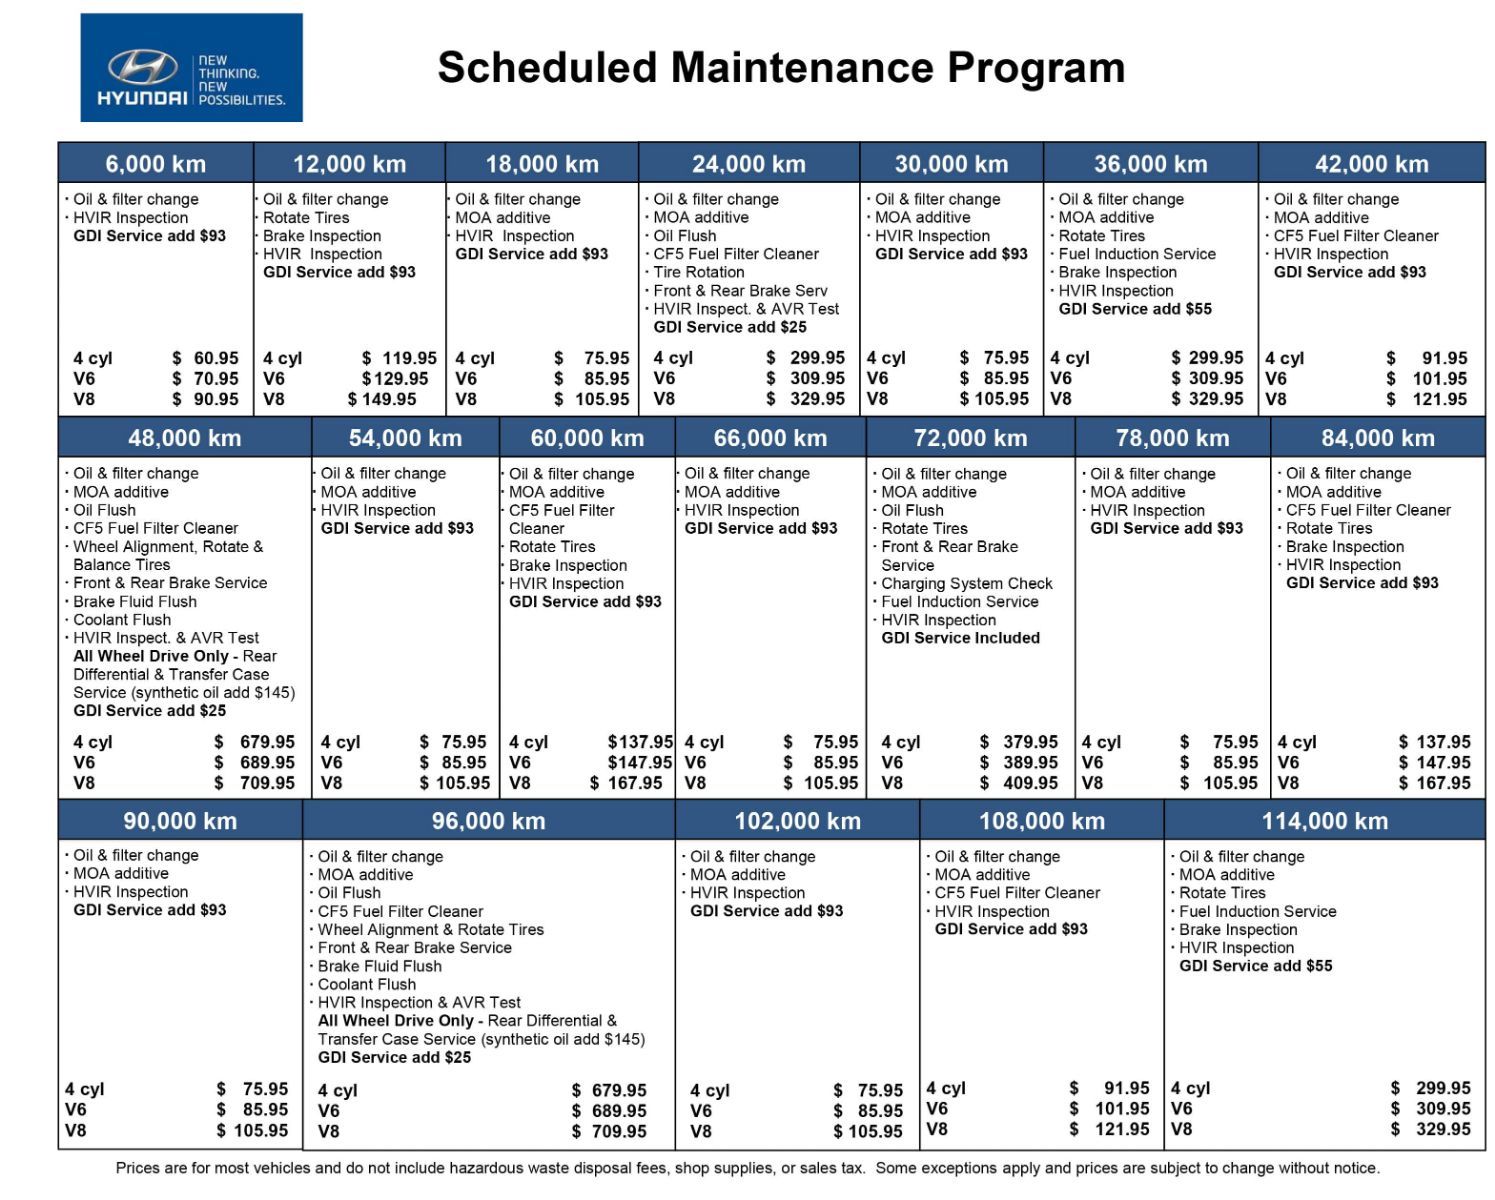 Hyundai of Regina Scheduled Maintenance